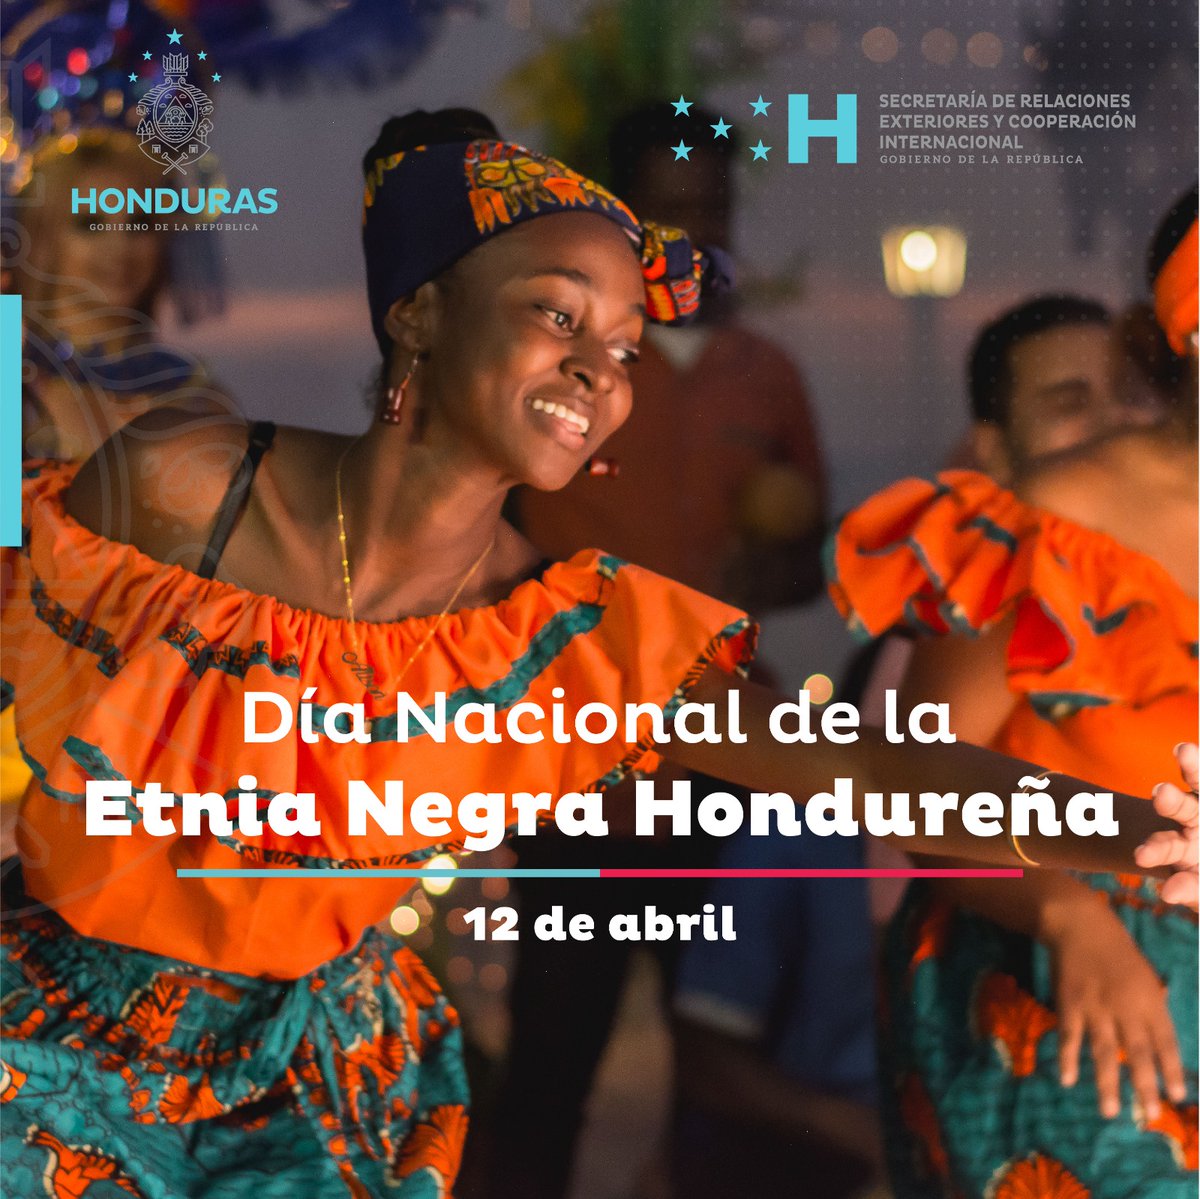 📌|Cancillería se suma a las felicitaciones de la llegada de los afrodescendientes a Honduras, es una oportunidad de reconocer su historia y contribuir a la cultura del país, resaltar sus luchas y tradiciones, fundamental para promover la inclusión y la diversidad en la sociedad.